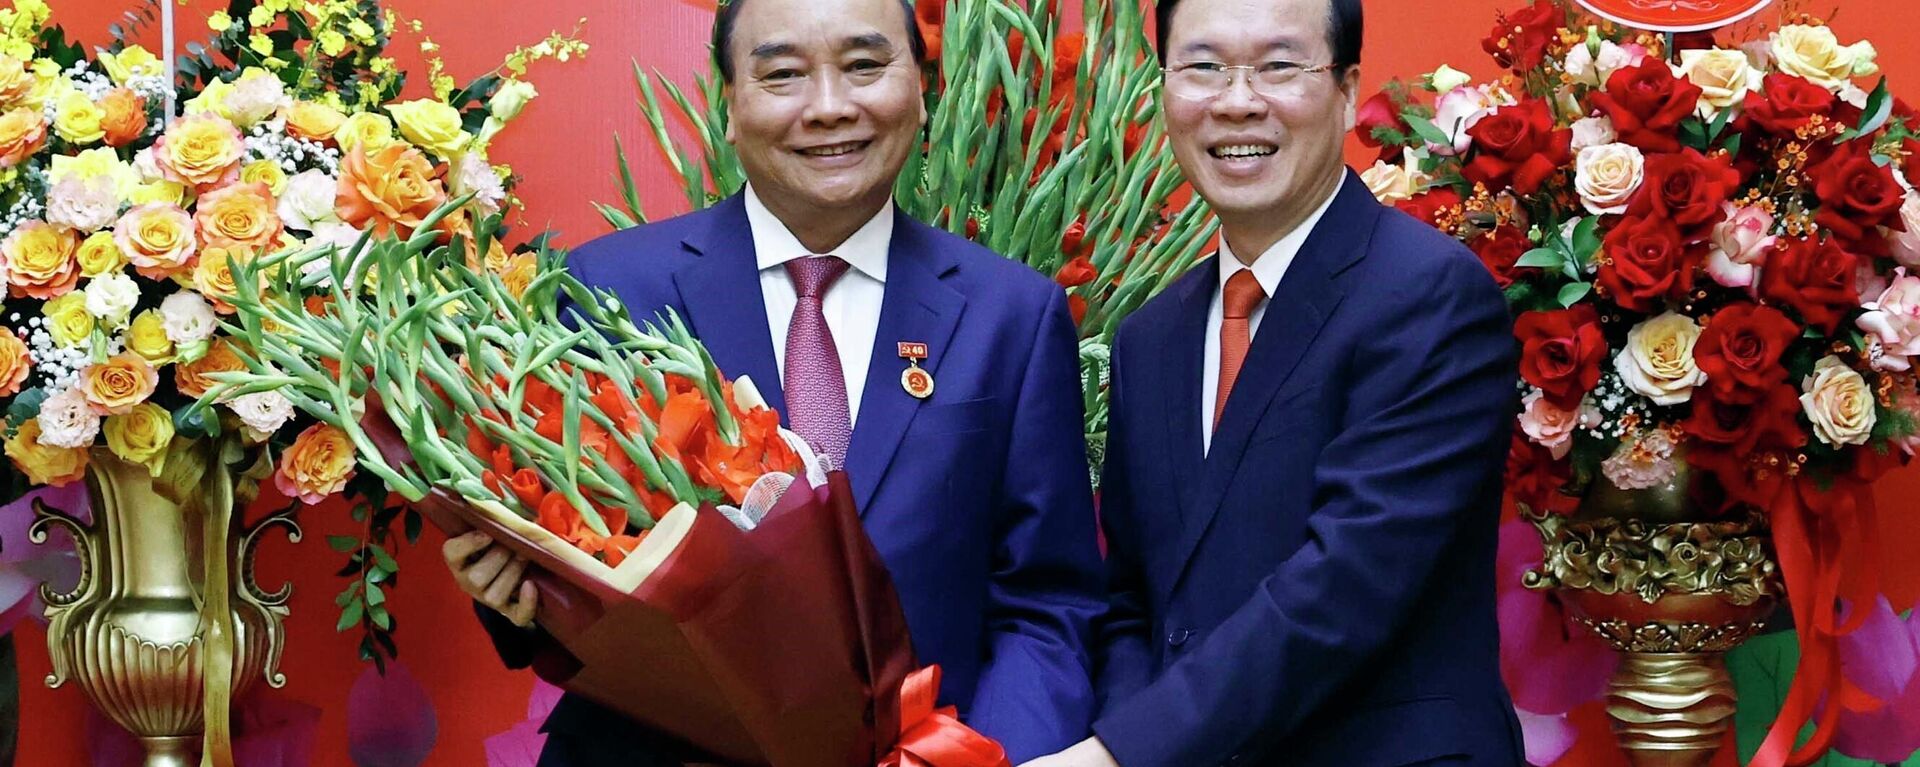 Lễ trao Huy hiệu 40 năm tuổi Đảng tặng đồng chí Nguyễn Xuân Phúc - Sputnik Việt Nam, 1920, 07.11.2022